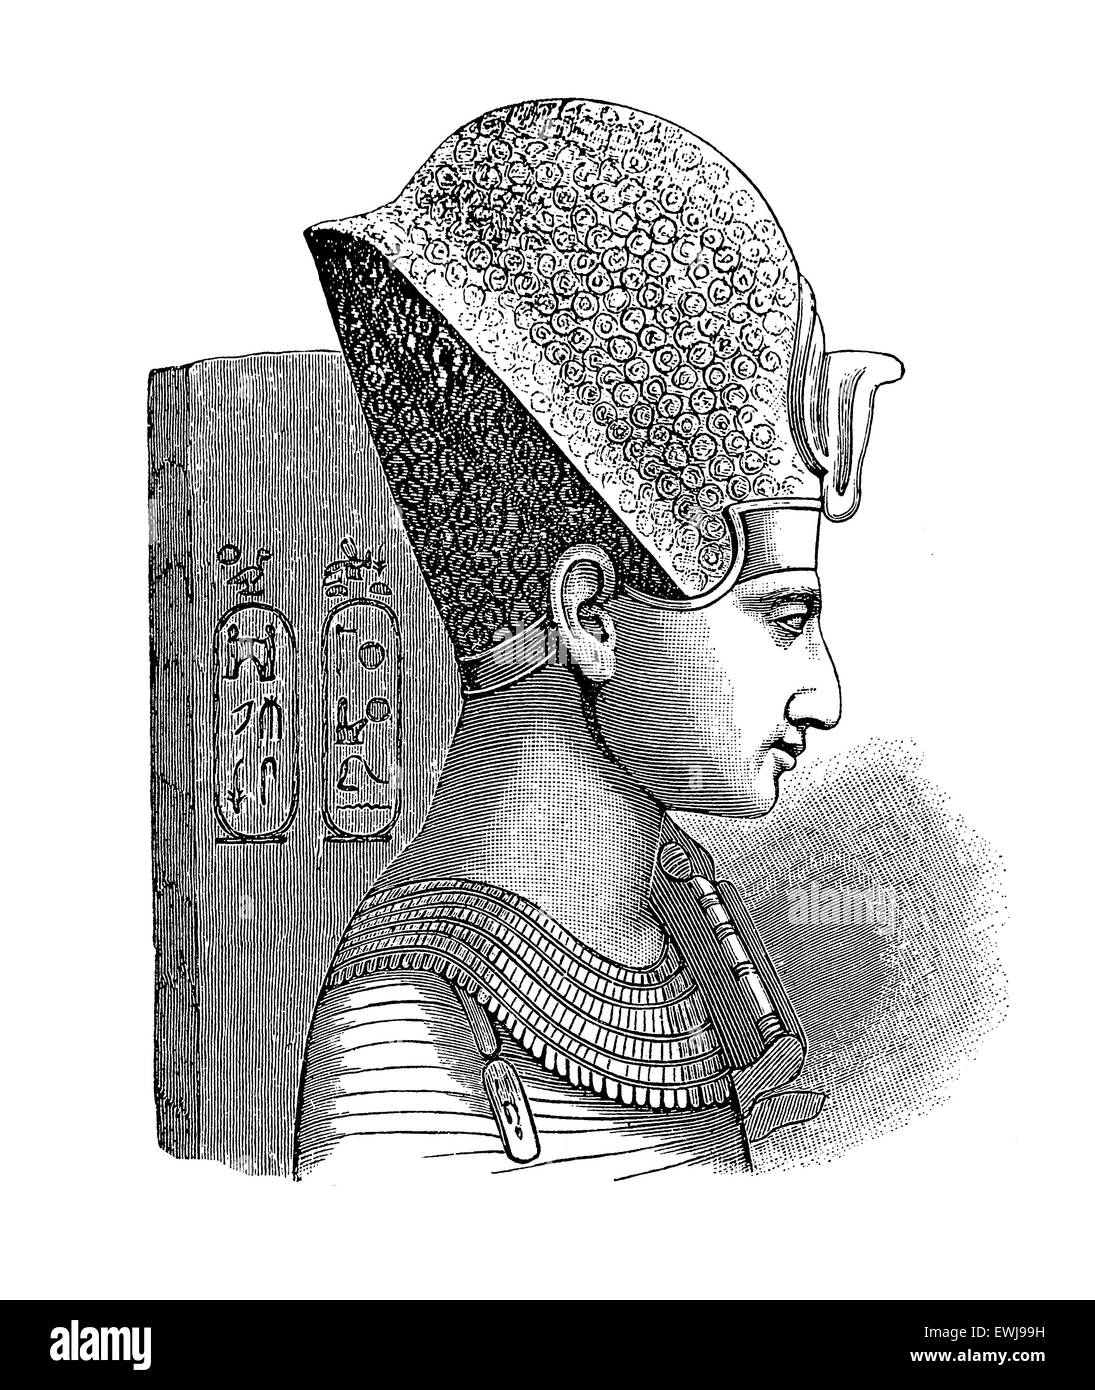 Antico Egitto - ritratto del faraone Ramses II, egli è spesso considerata come la più grande, il più conosciuto e più potente del faraone egiziano Impero Foto Stock